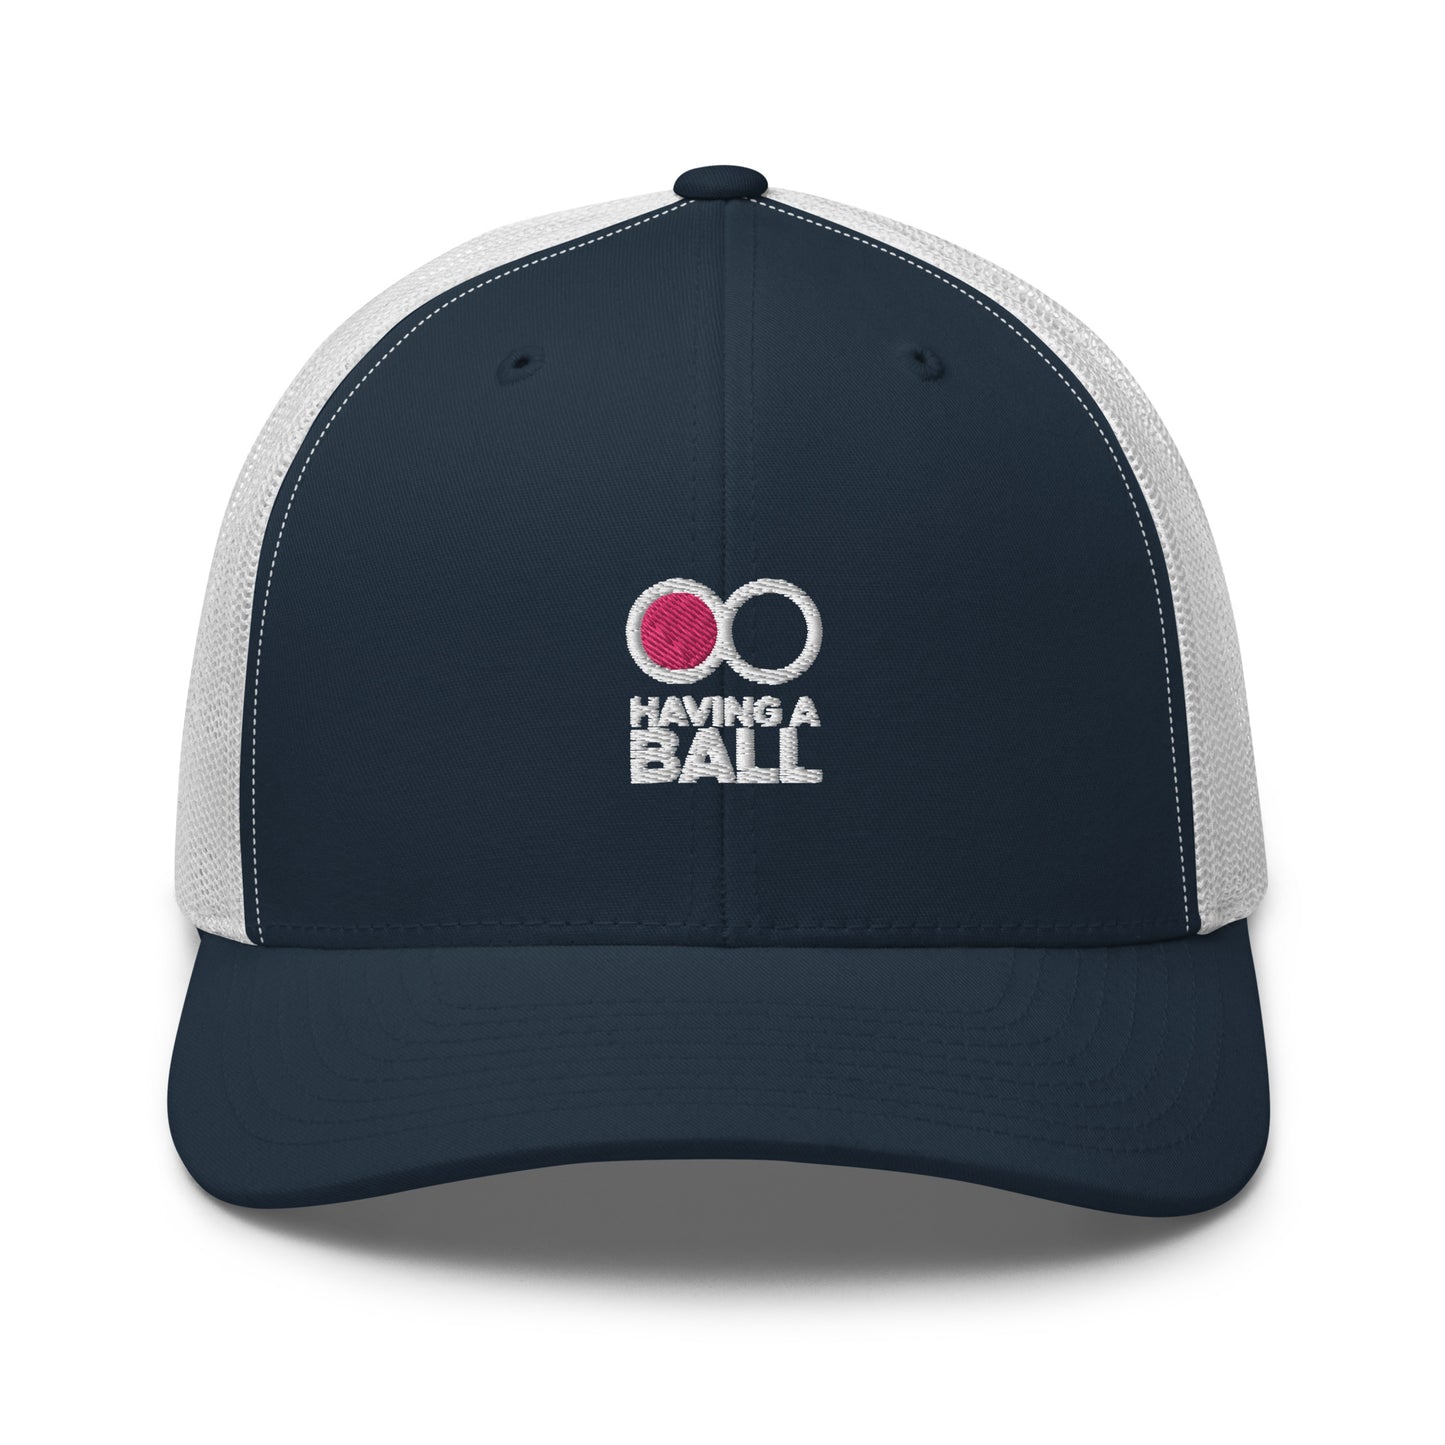 Having A Ball - Trucker Cap